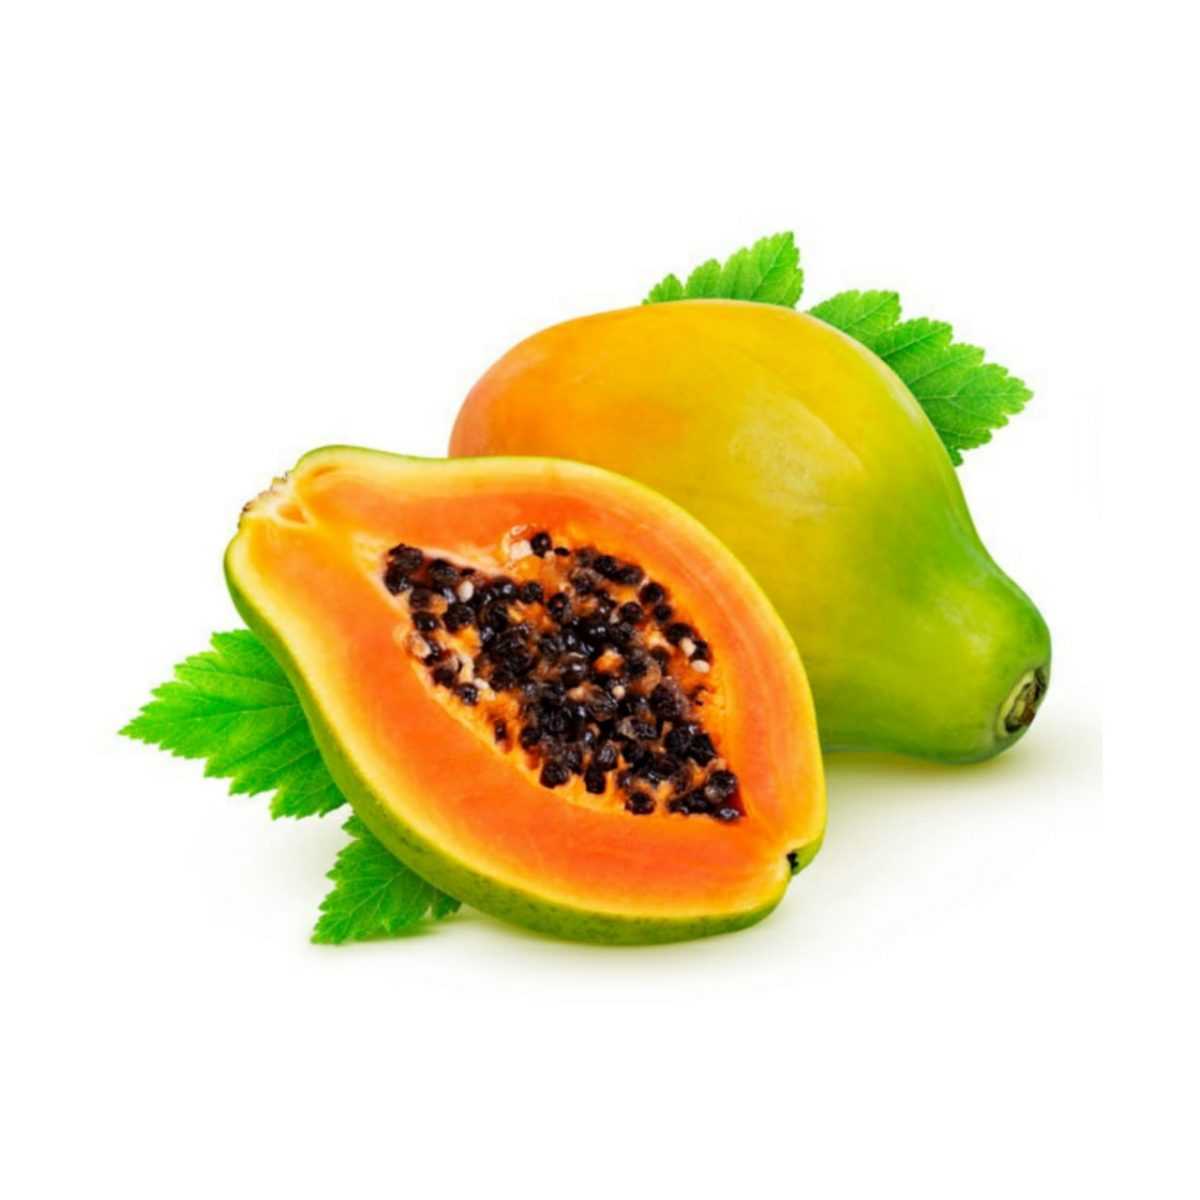 Папайя – тропический плод дерева папайя зеленовато-оранжевого цвета продолговатой формы, напоминающий дыню